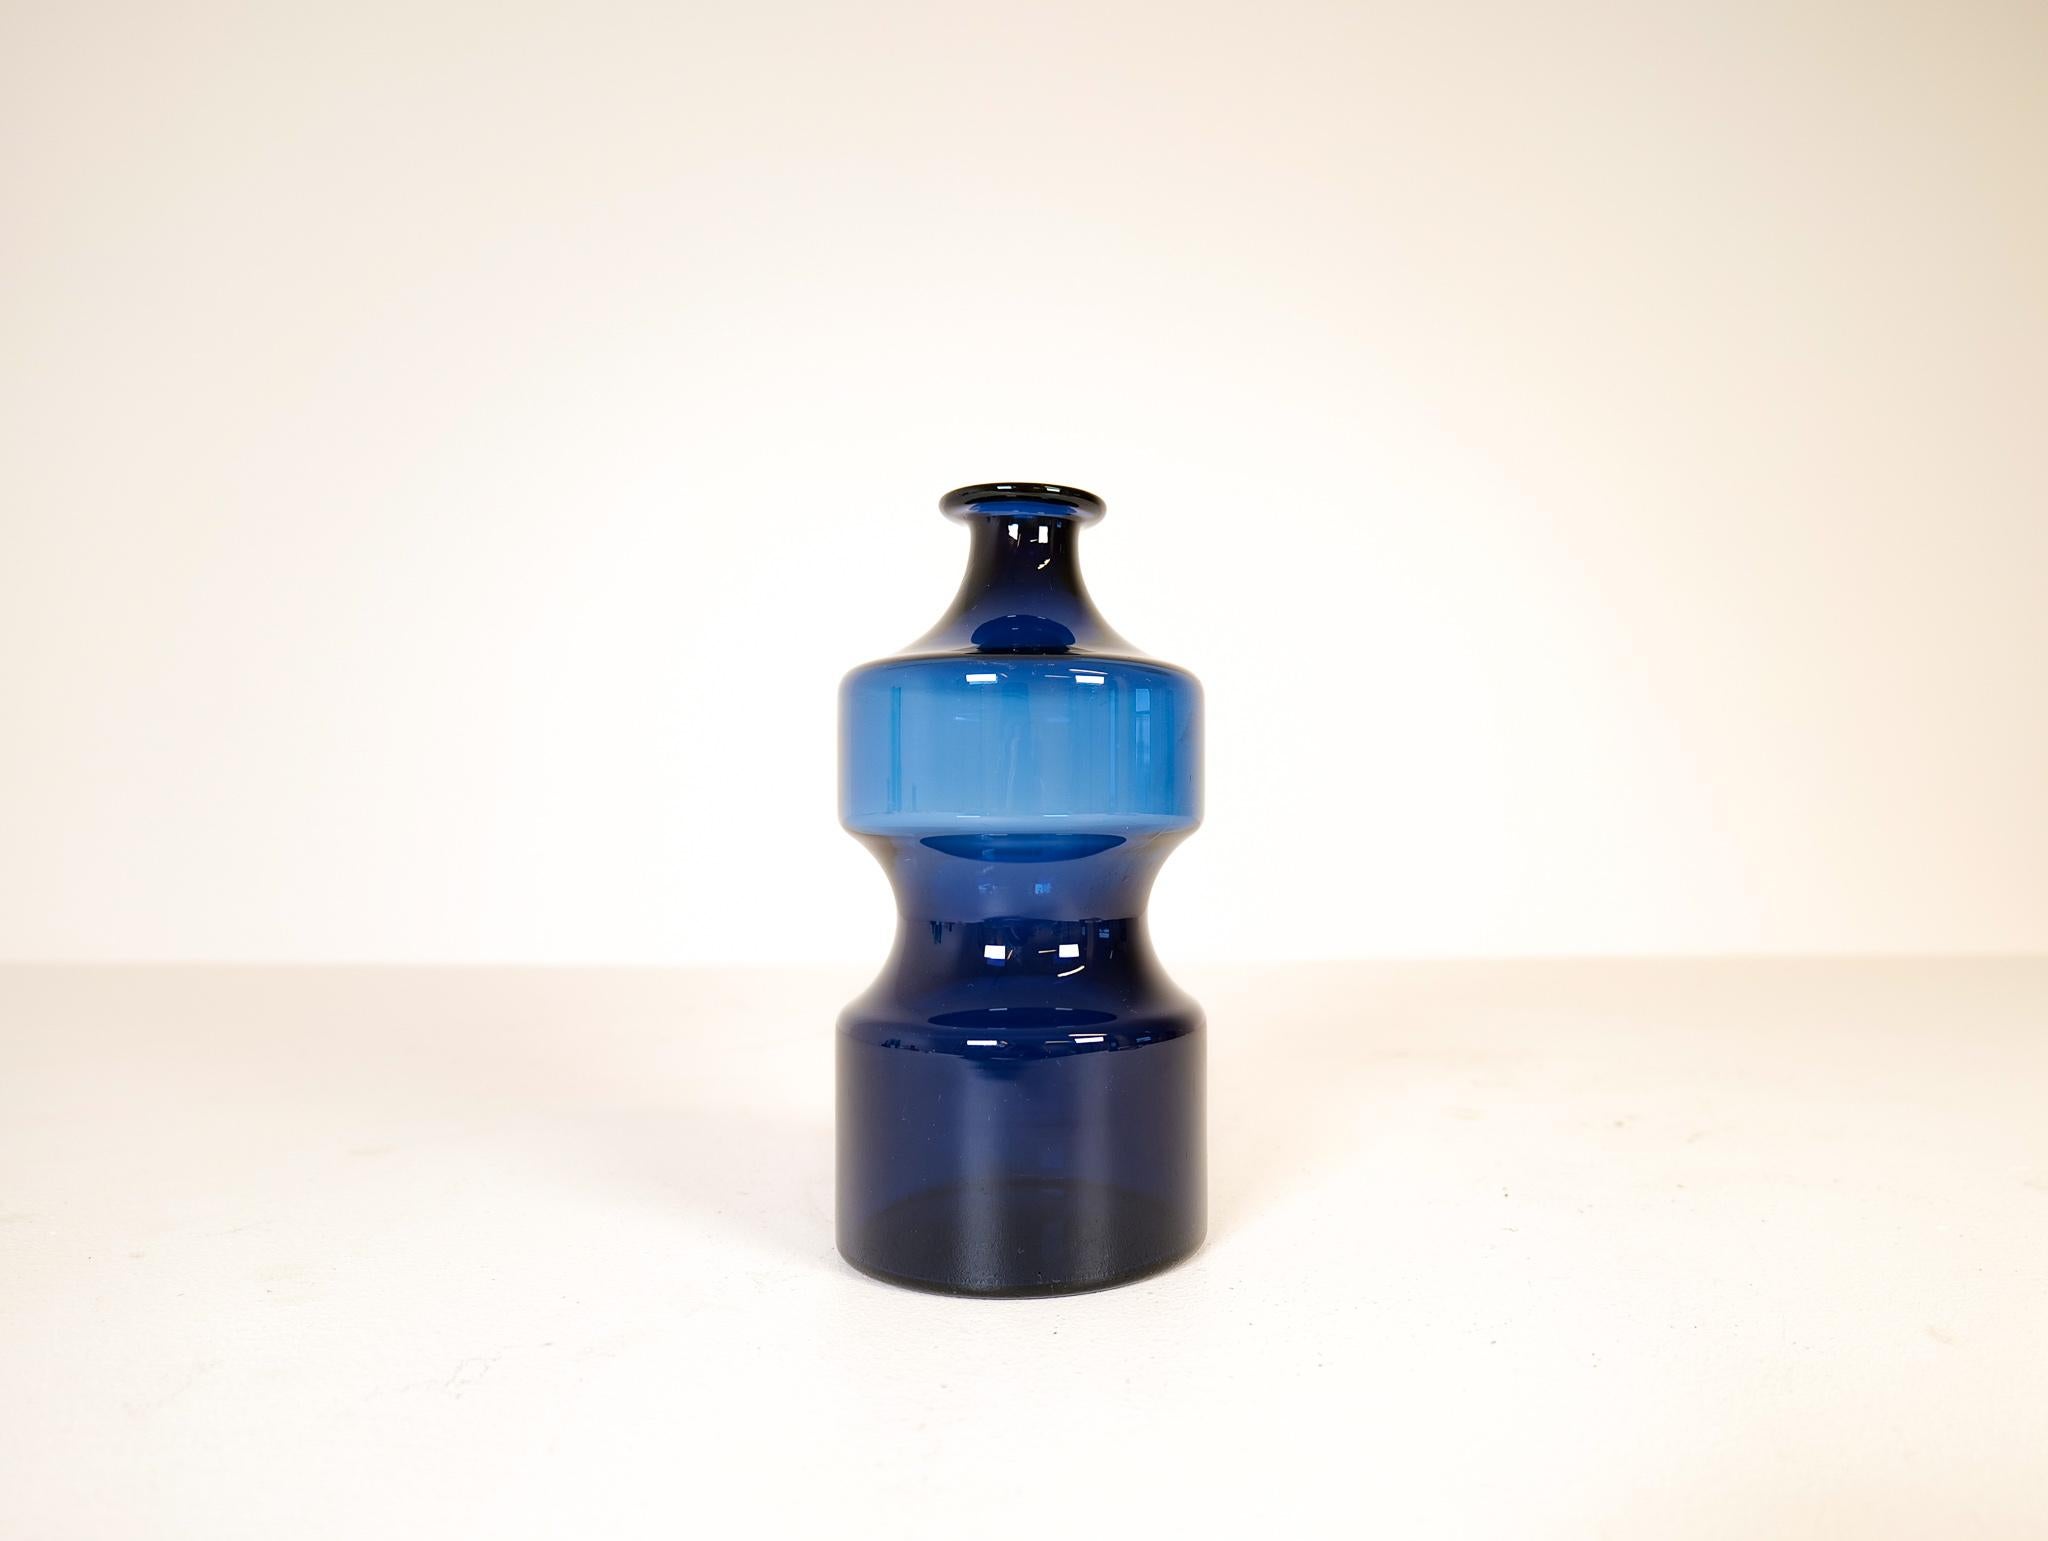 Diese atemberaubende blaue Vase wurde in den 1970er Jahren von Timo Sarpaneva für Iittala entworfen und ist mit ihrem intensiv blauen Glas ein schönes Designerstück. 

 Guter Zustand, Singed T.S unter dem Boden.

Abmessungen: H 25 cm, T 13